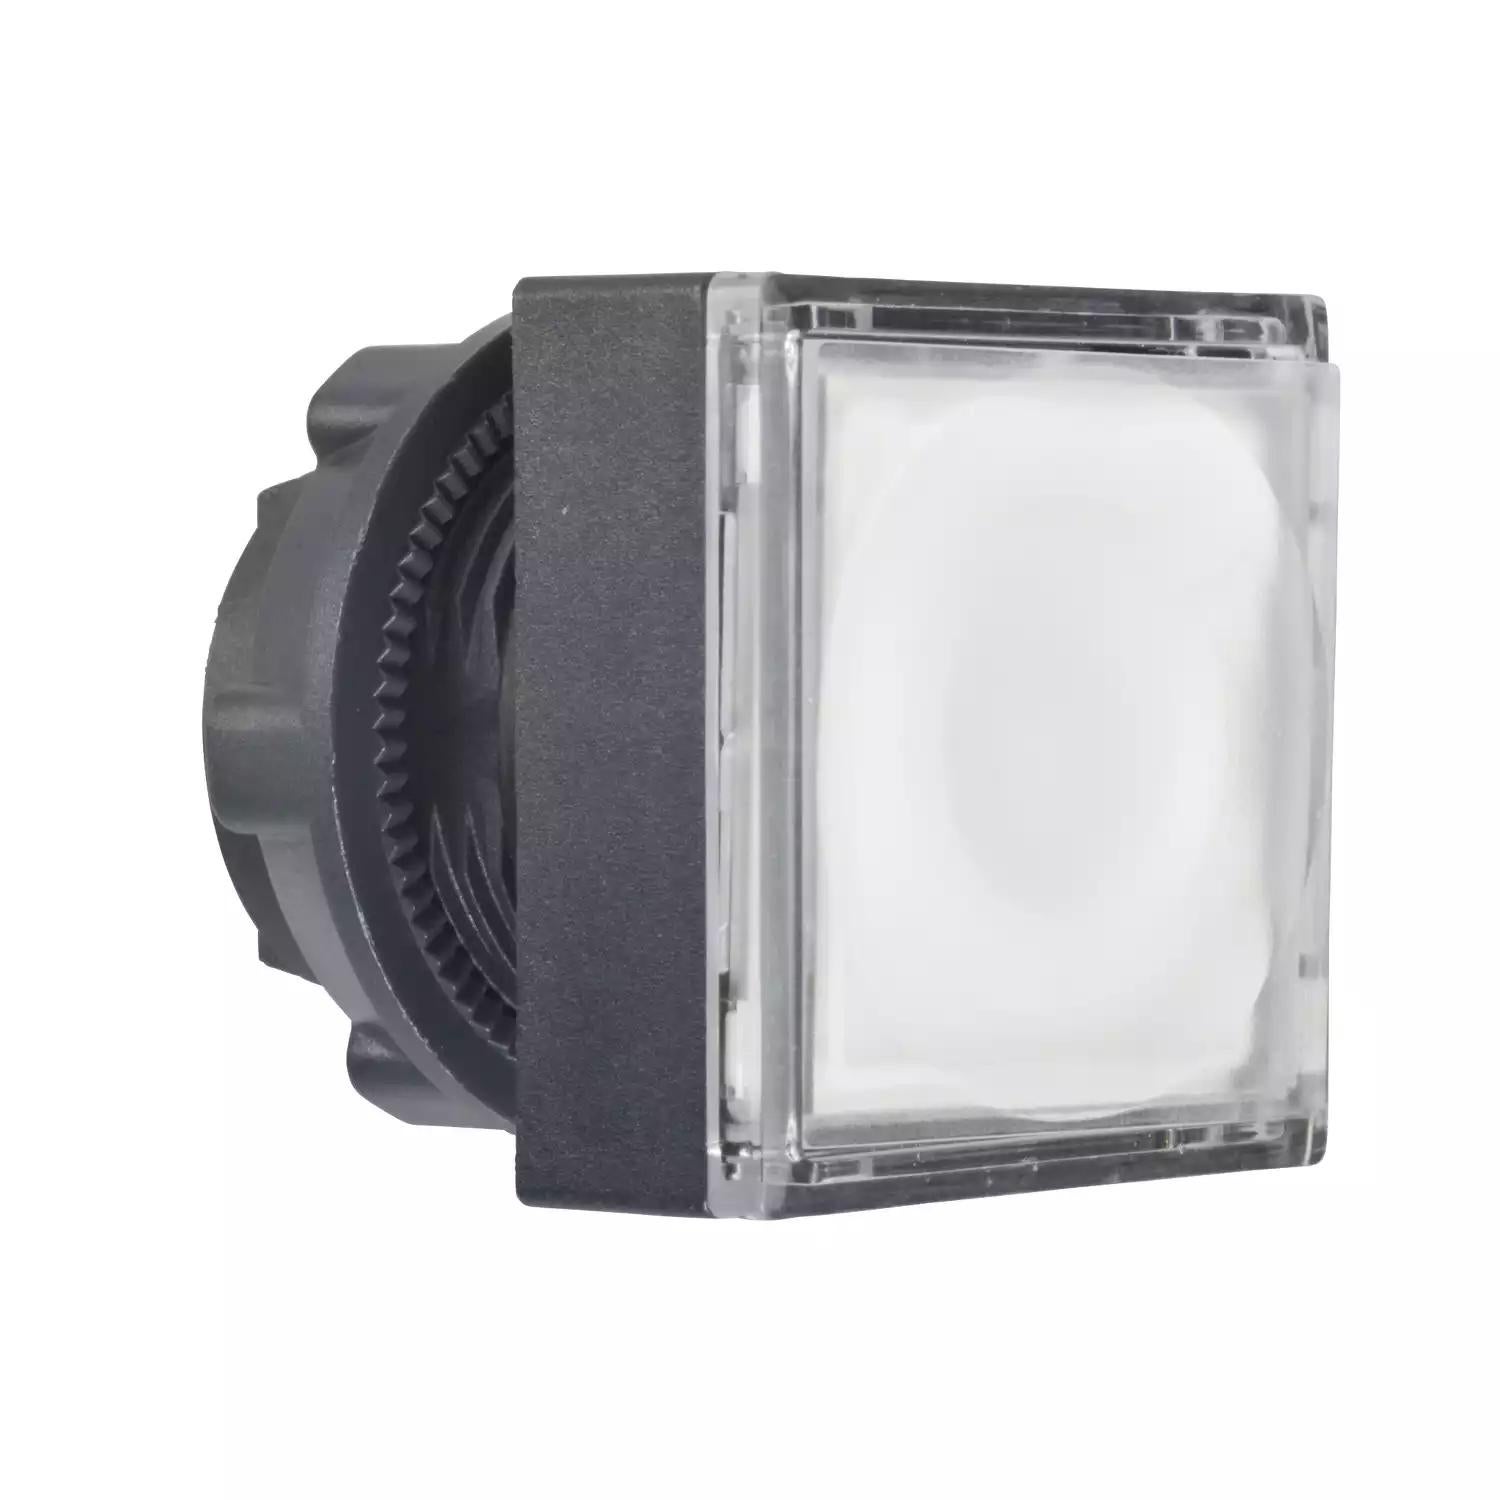 Harmony XB5, Illuminated push button square head, plastic, flush, white, Ø22, spring return, integral LED